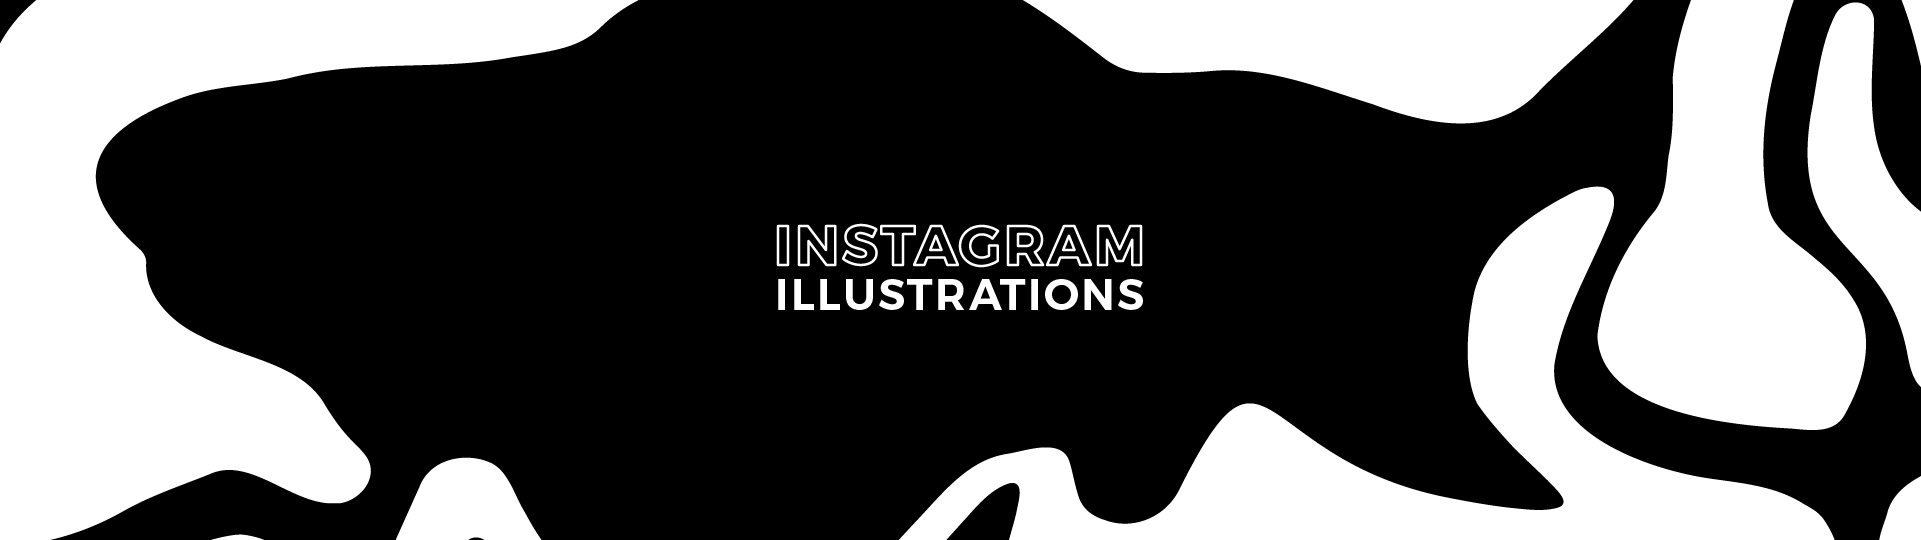 instagram illustrations